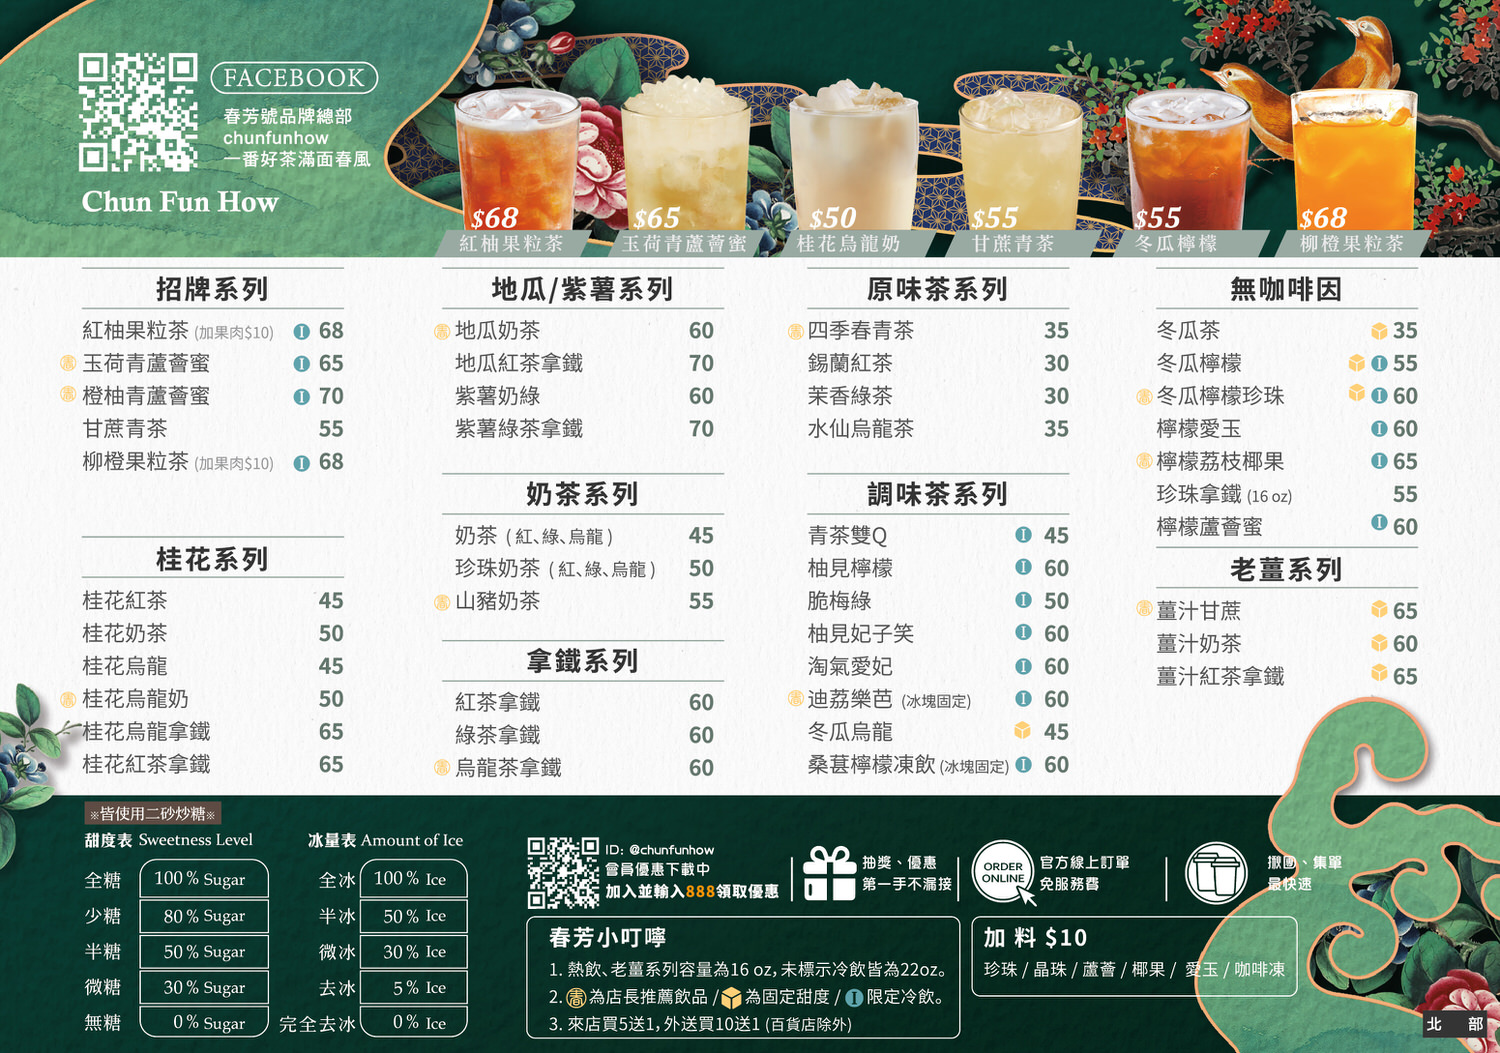 春芳號菜單menu及特色飲品